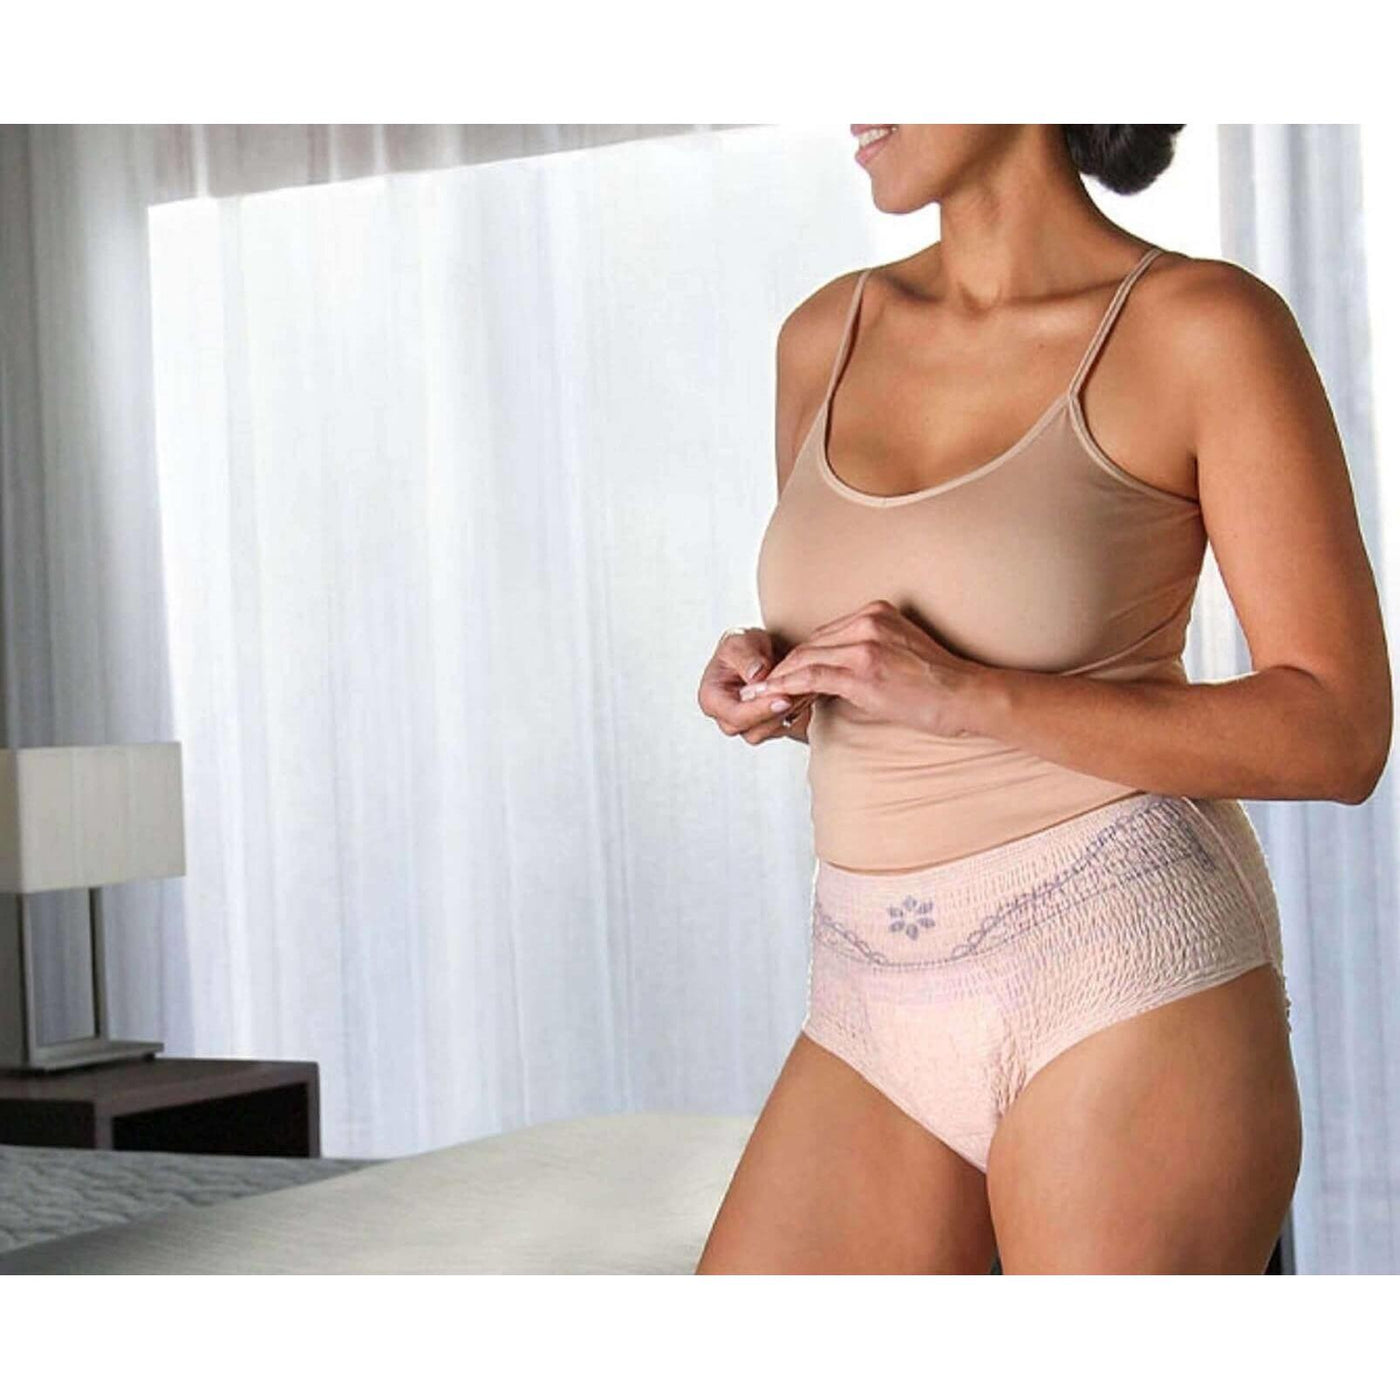 Depend Fit-Flex Underwear for Women Maximum Absorbency